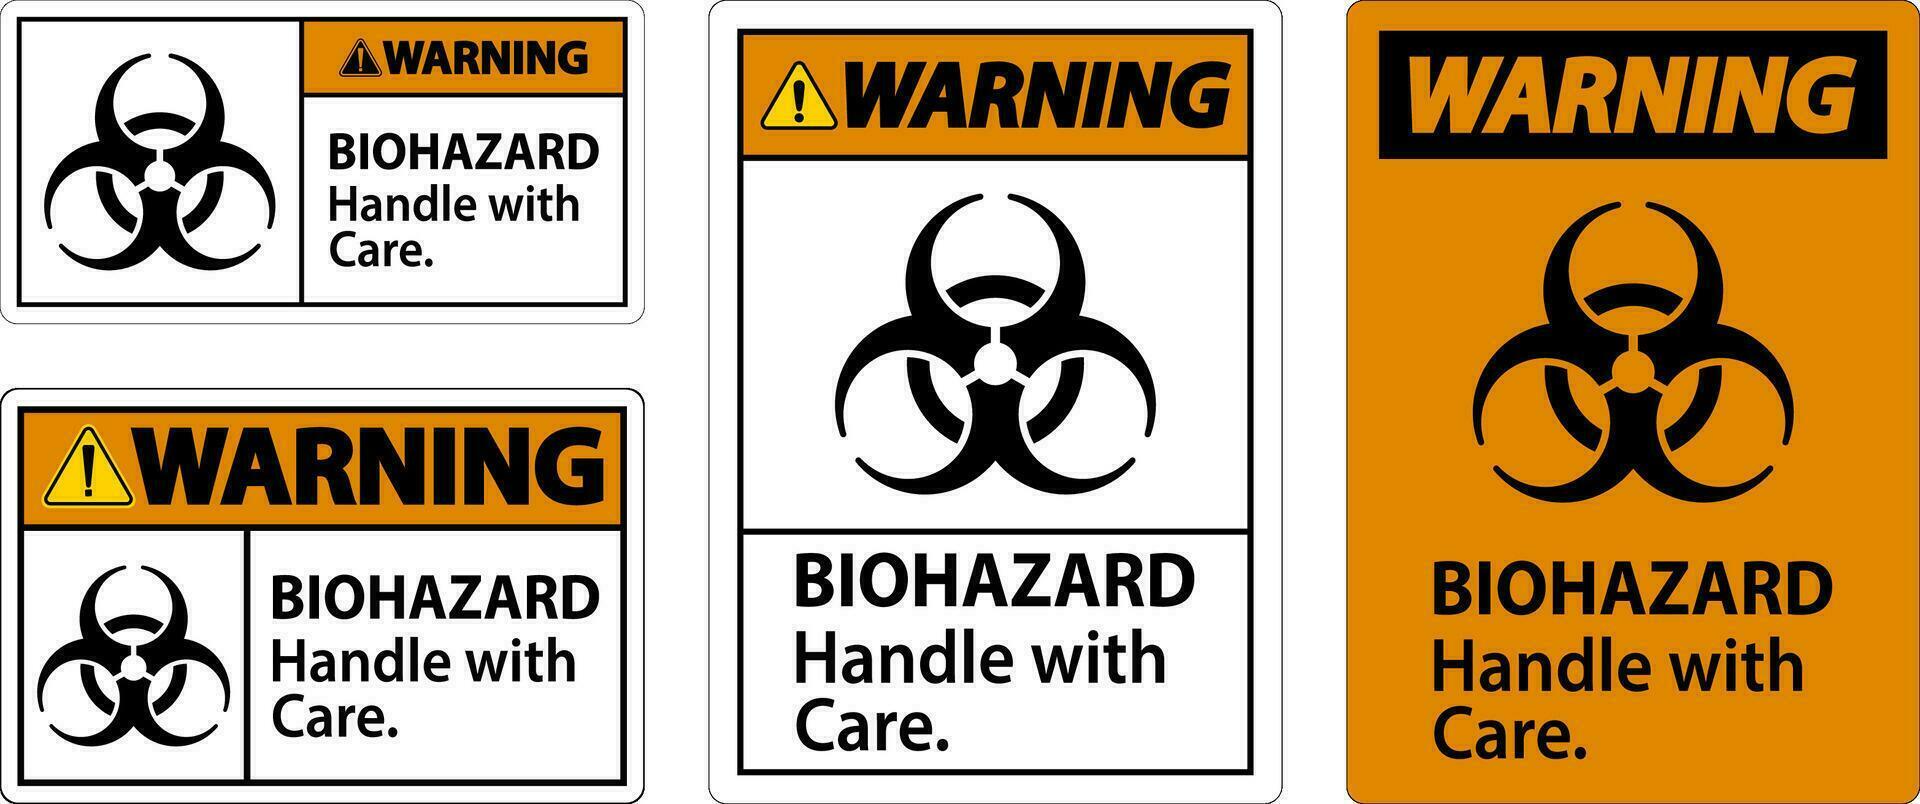 rischio biologico avvertimento etichetta rischio biologico, maniglia con cura vettore